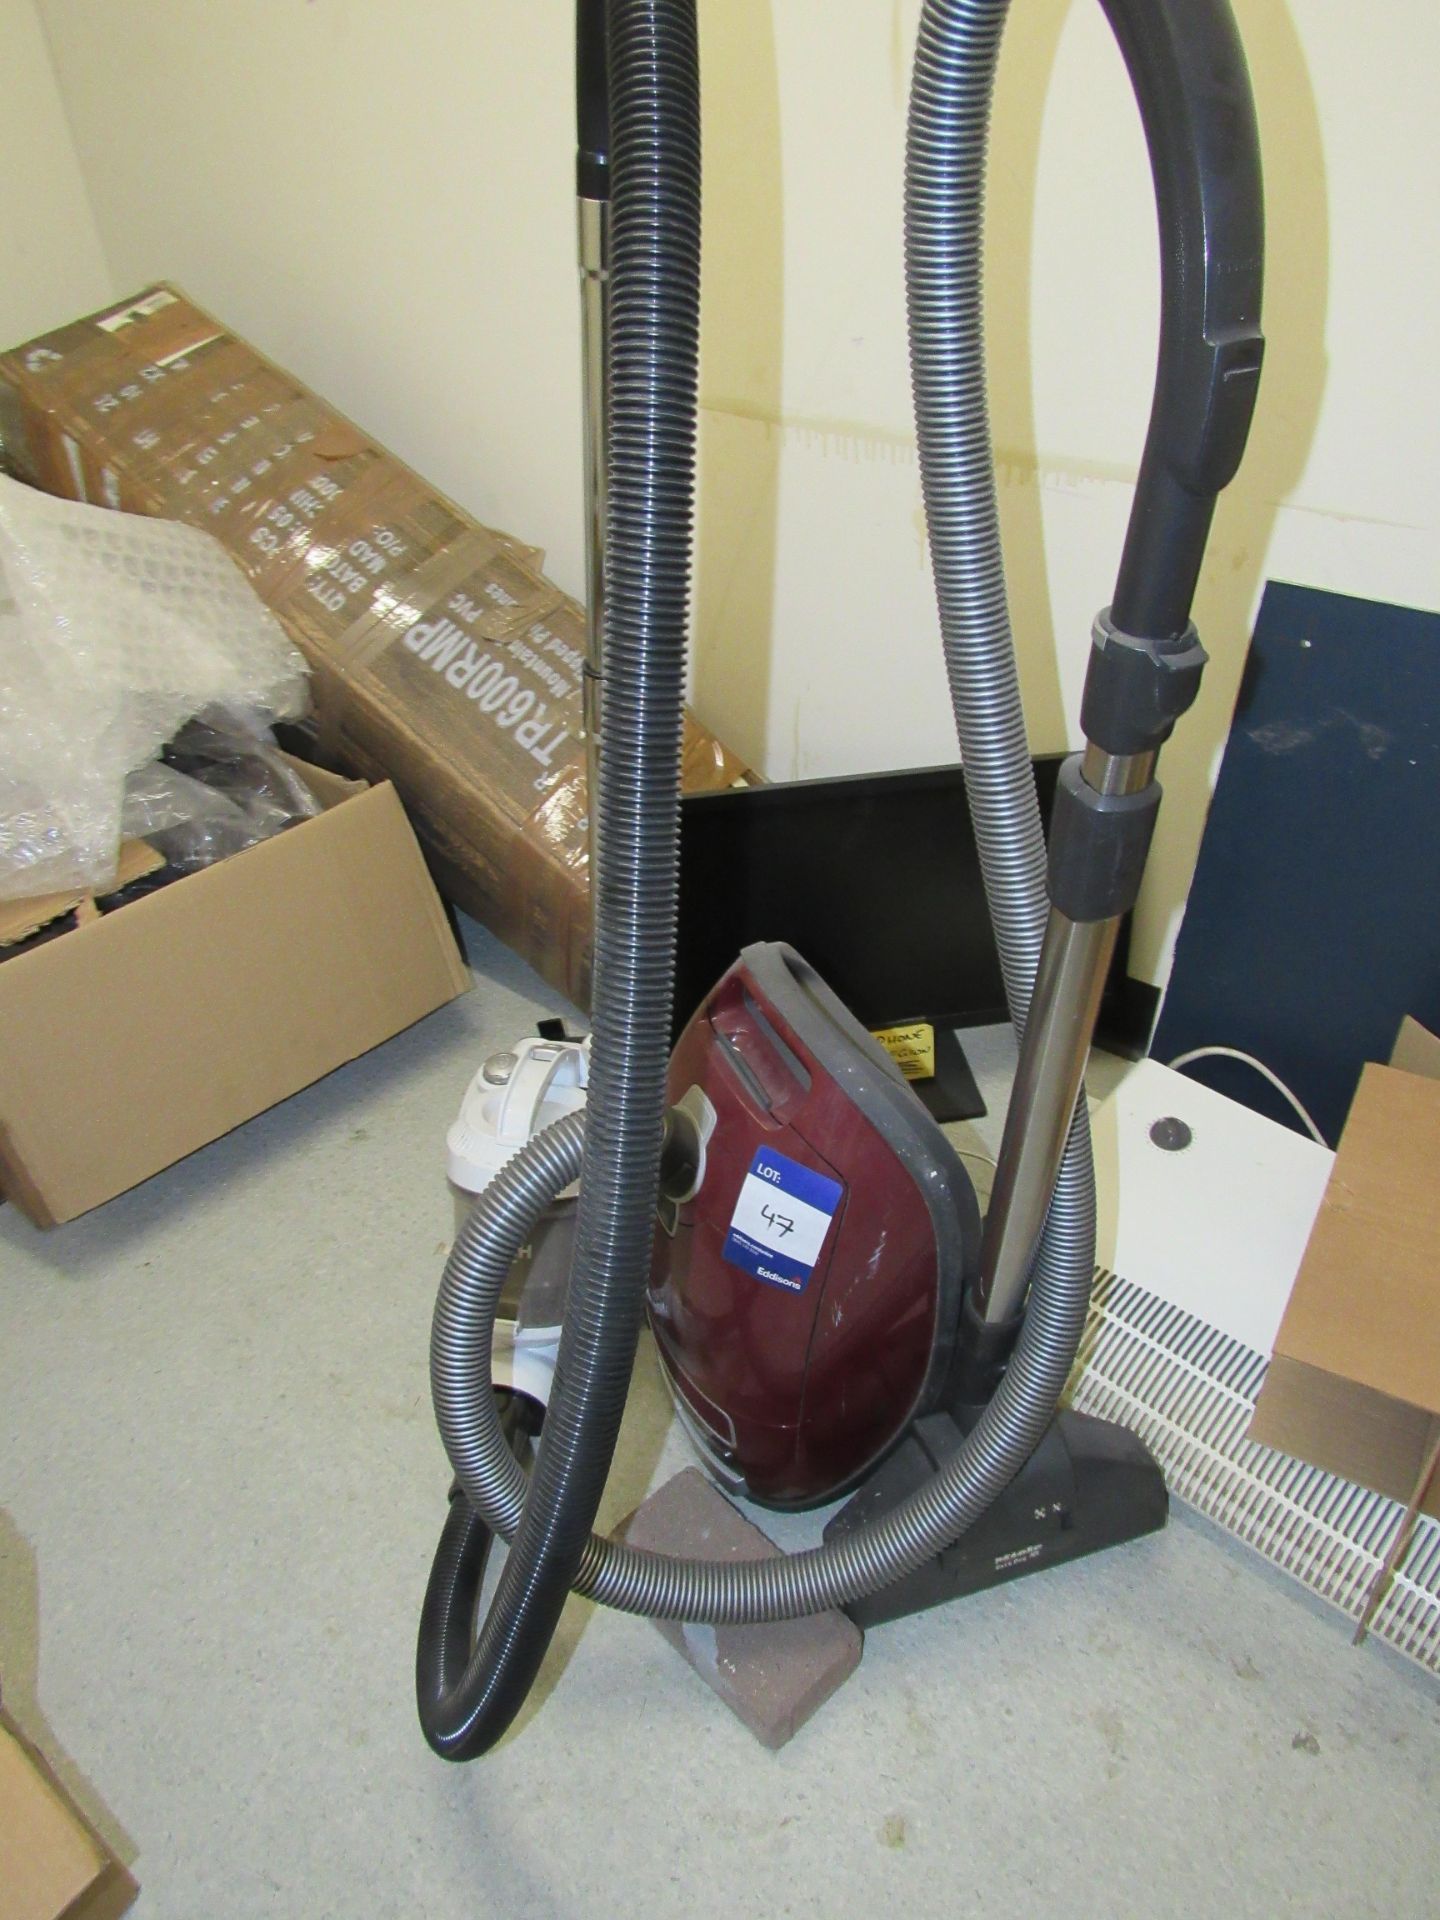 2 Various vacuum cleaners